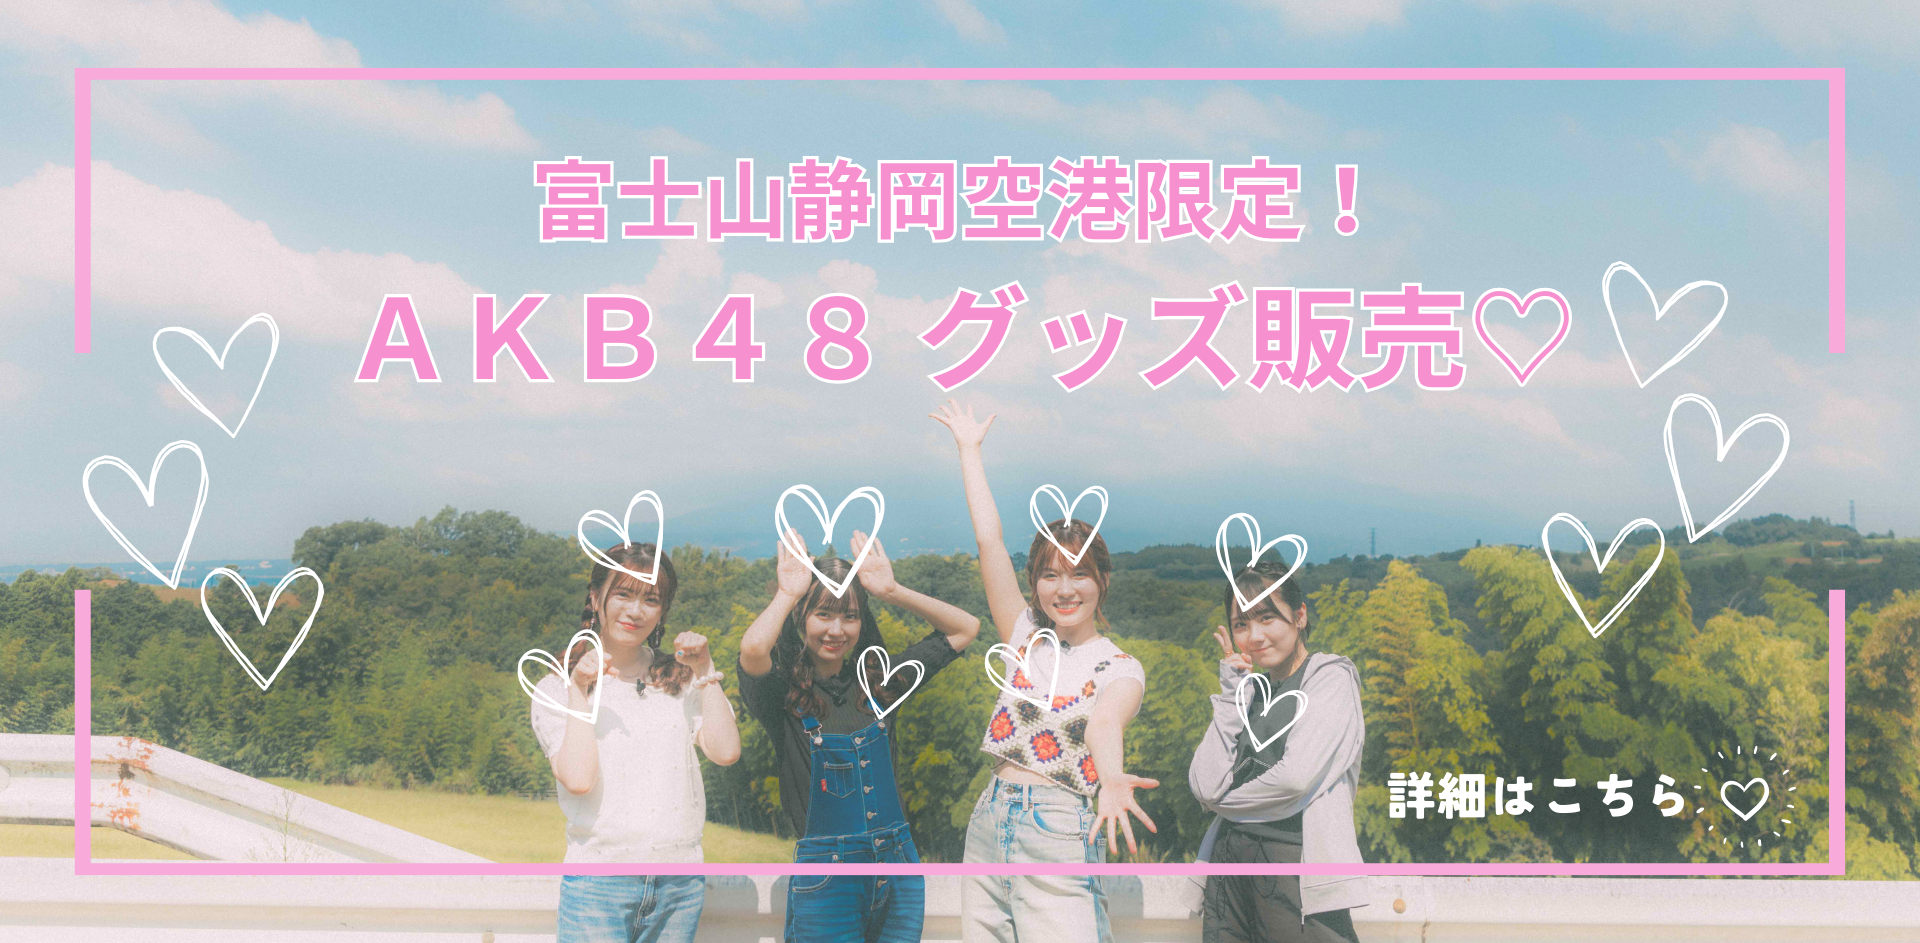 AKB48-1-pop.png